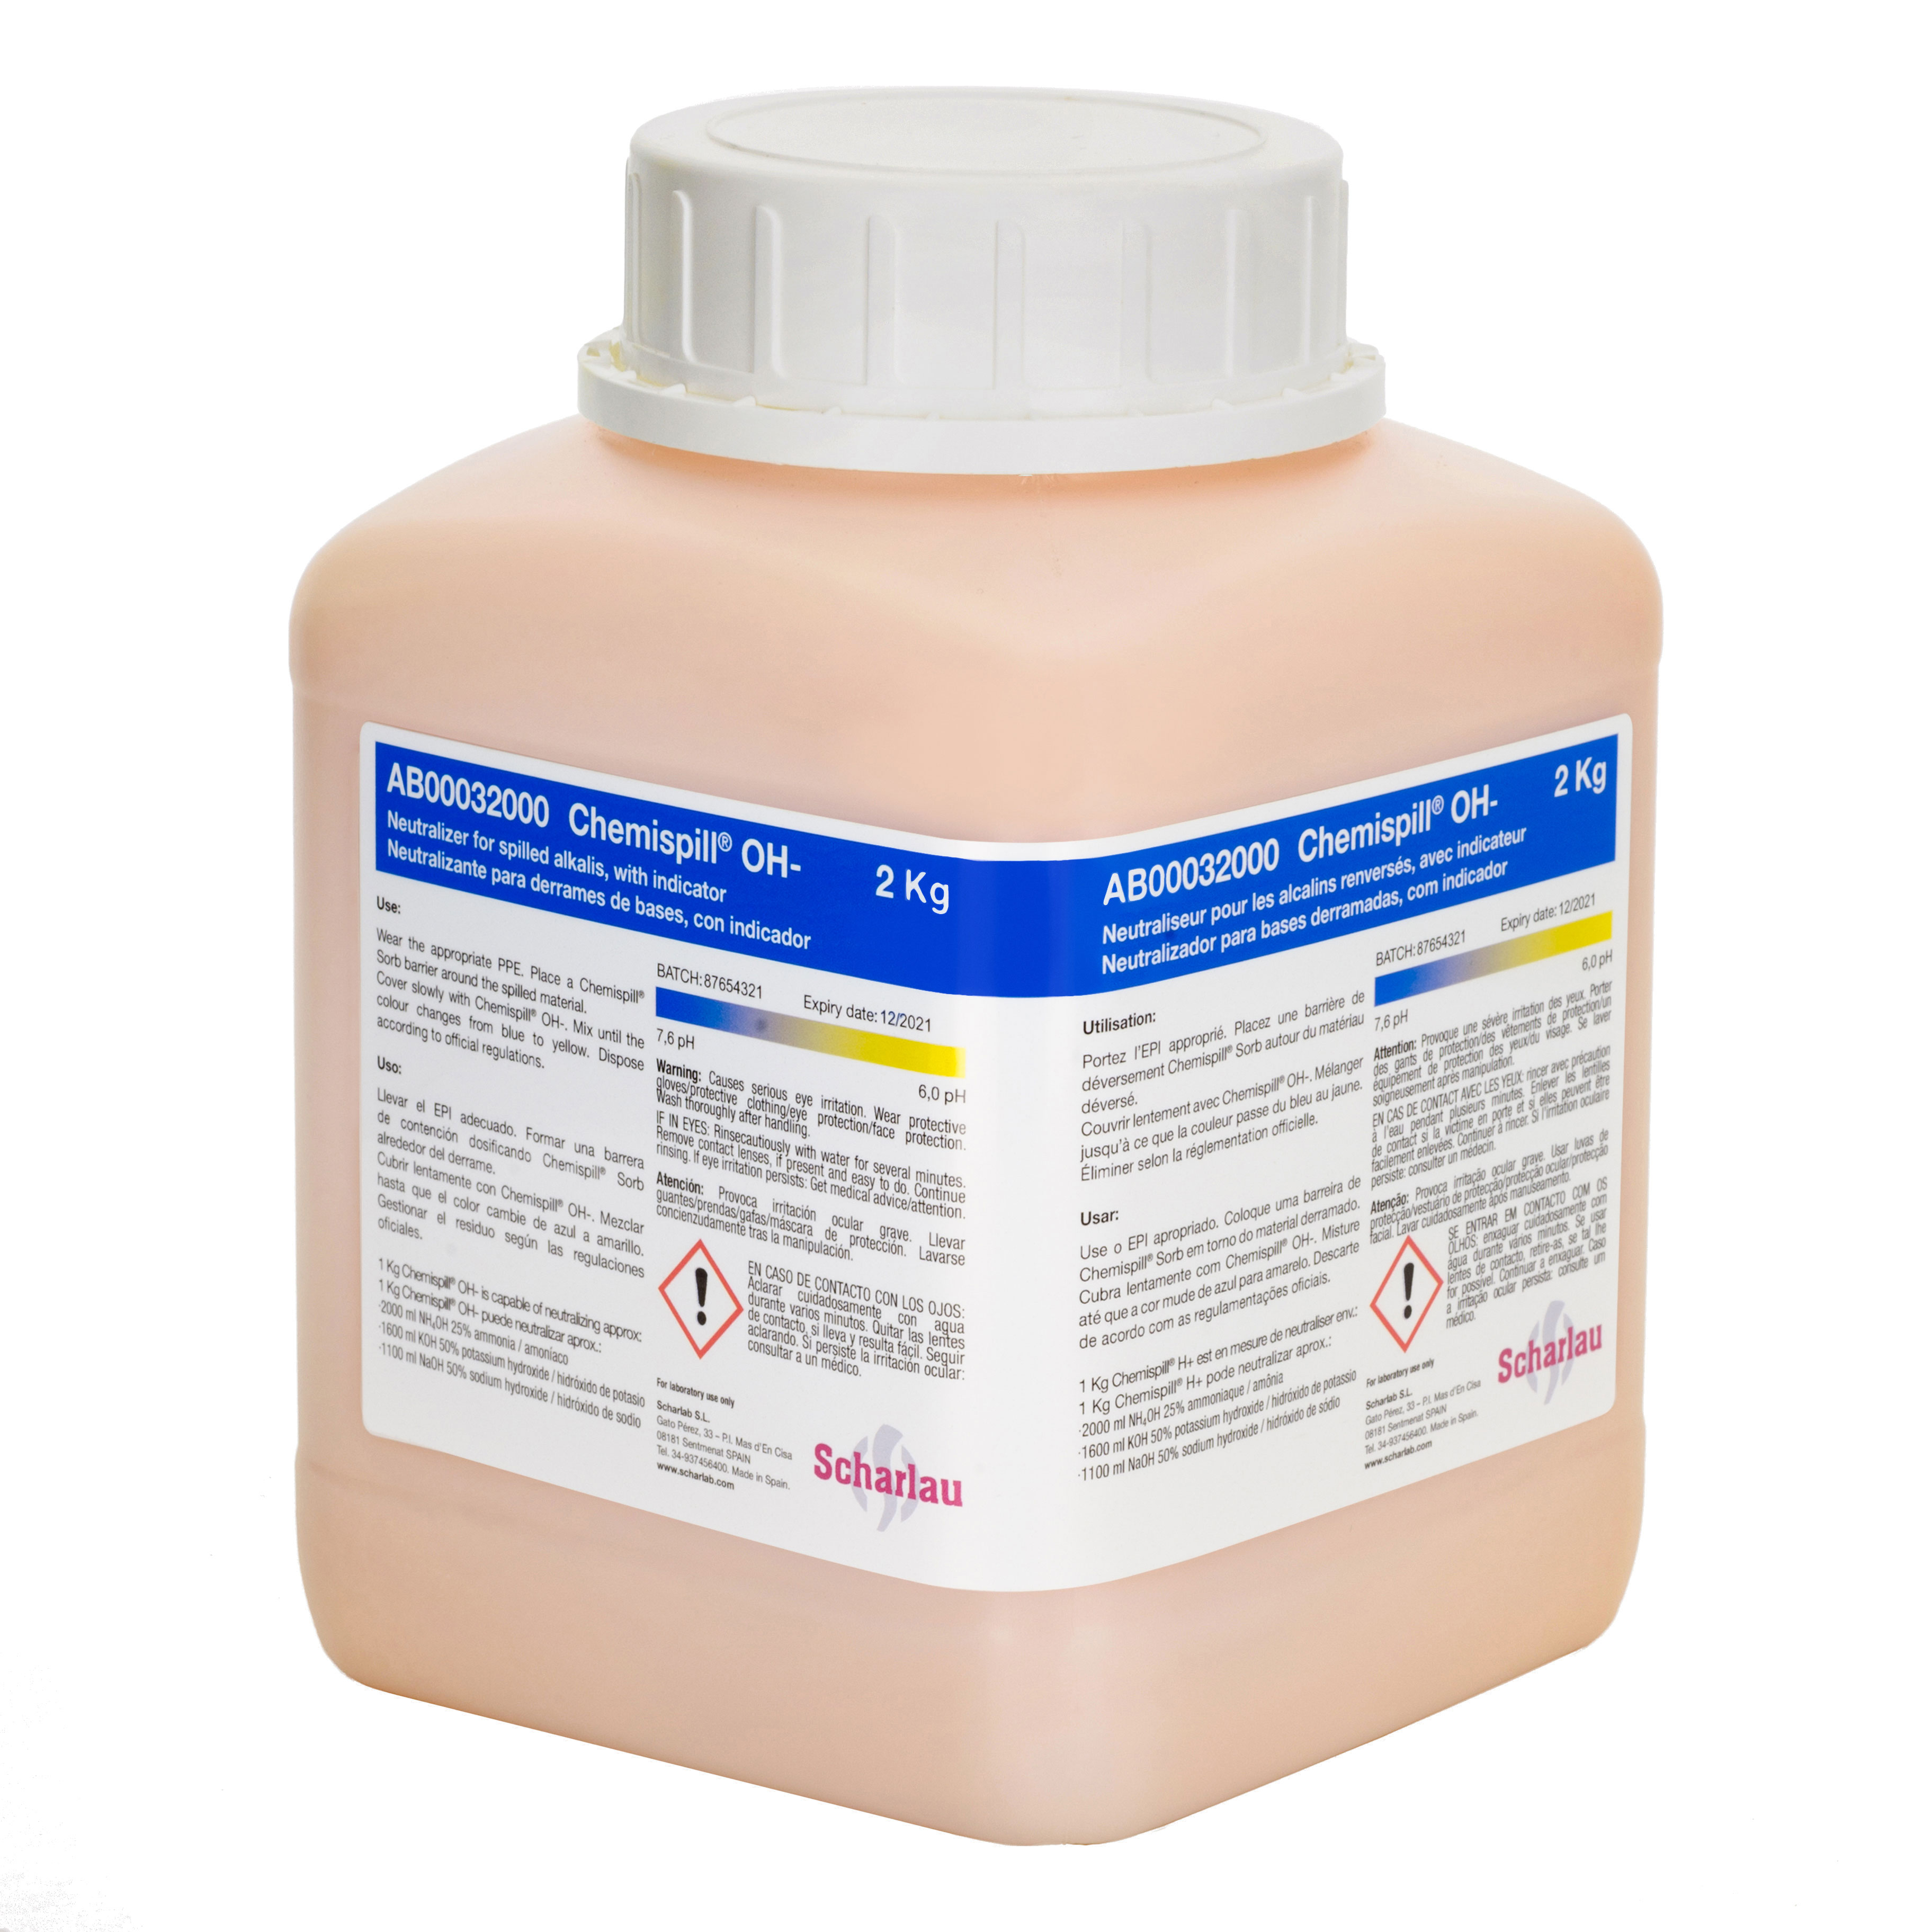 Chemispill® OH-, absorbente y neutralizante para derrames de bases, con indicador